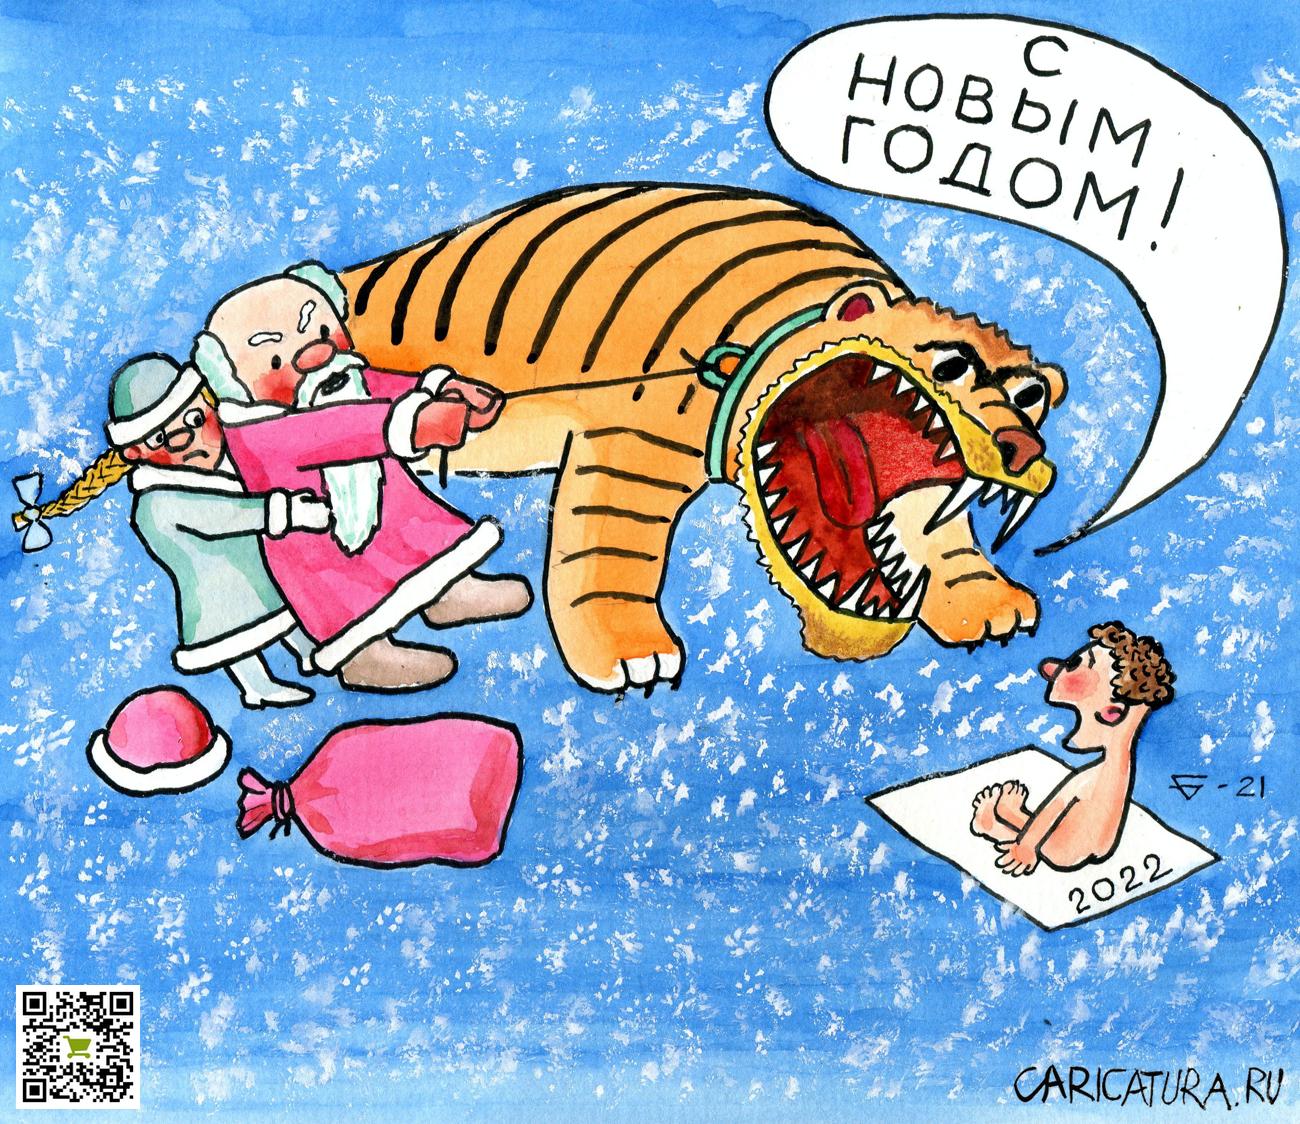 Карикатура "С Новым годом!", Юрий Бусагин